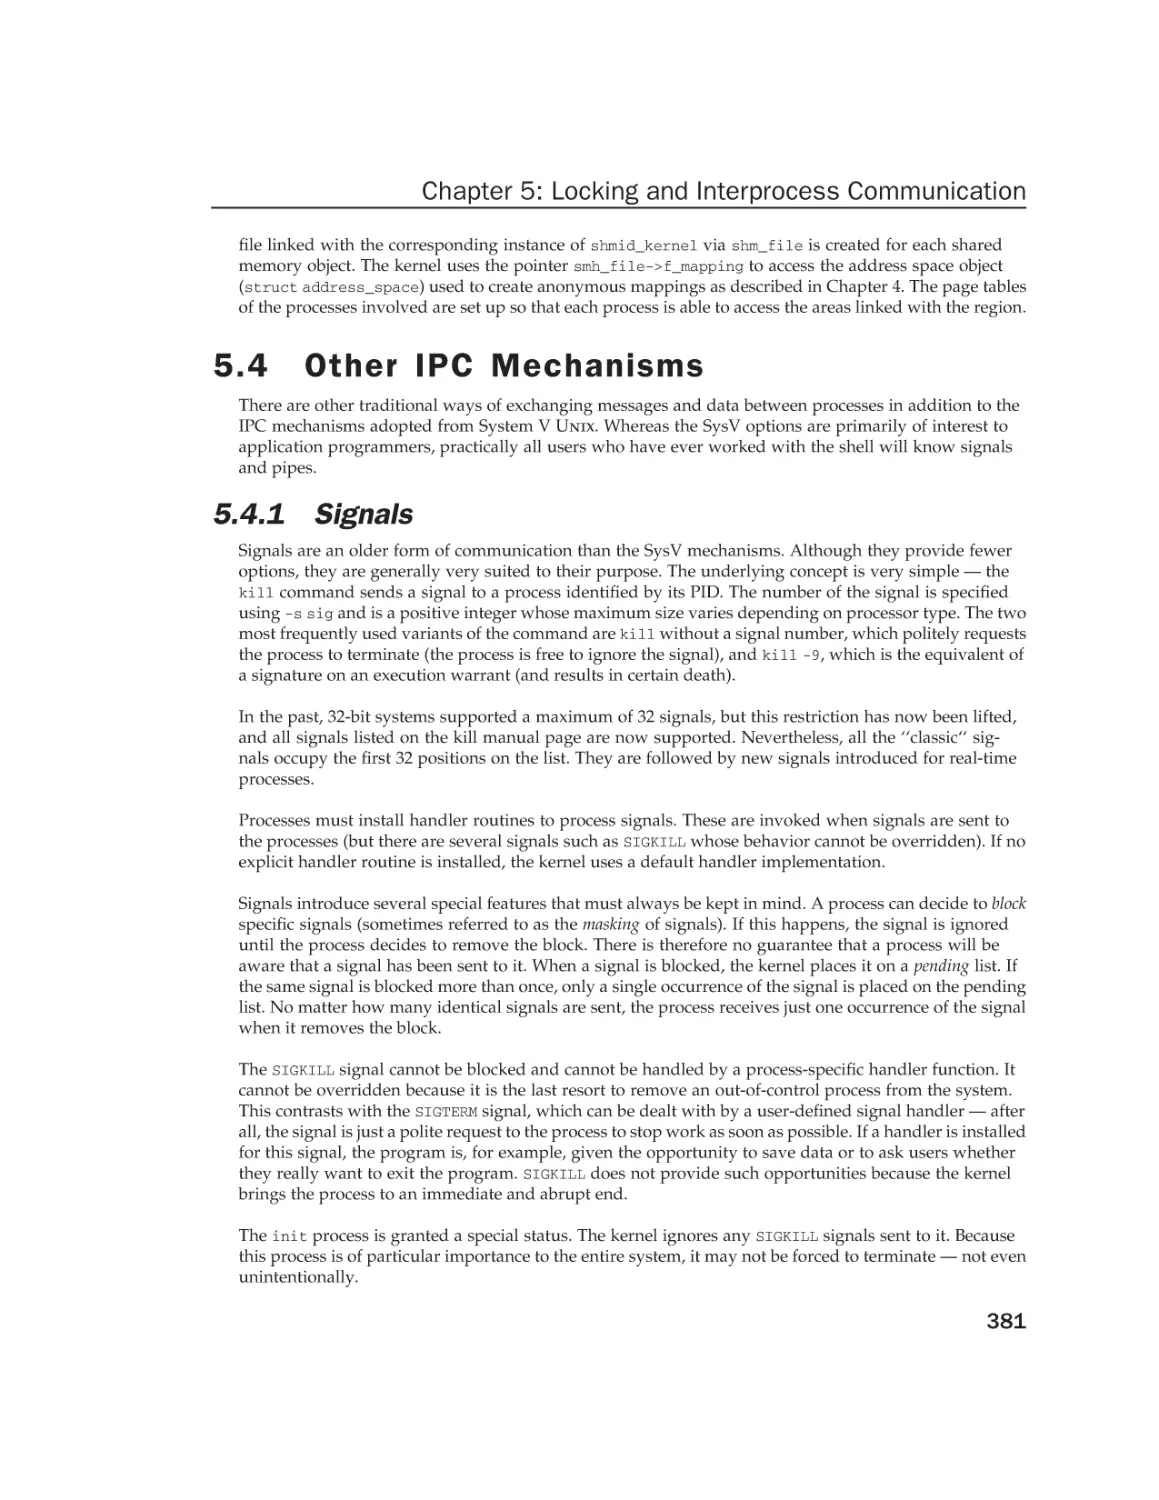 5.4 Other IPC Mechanisms